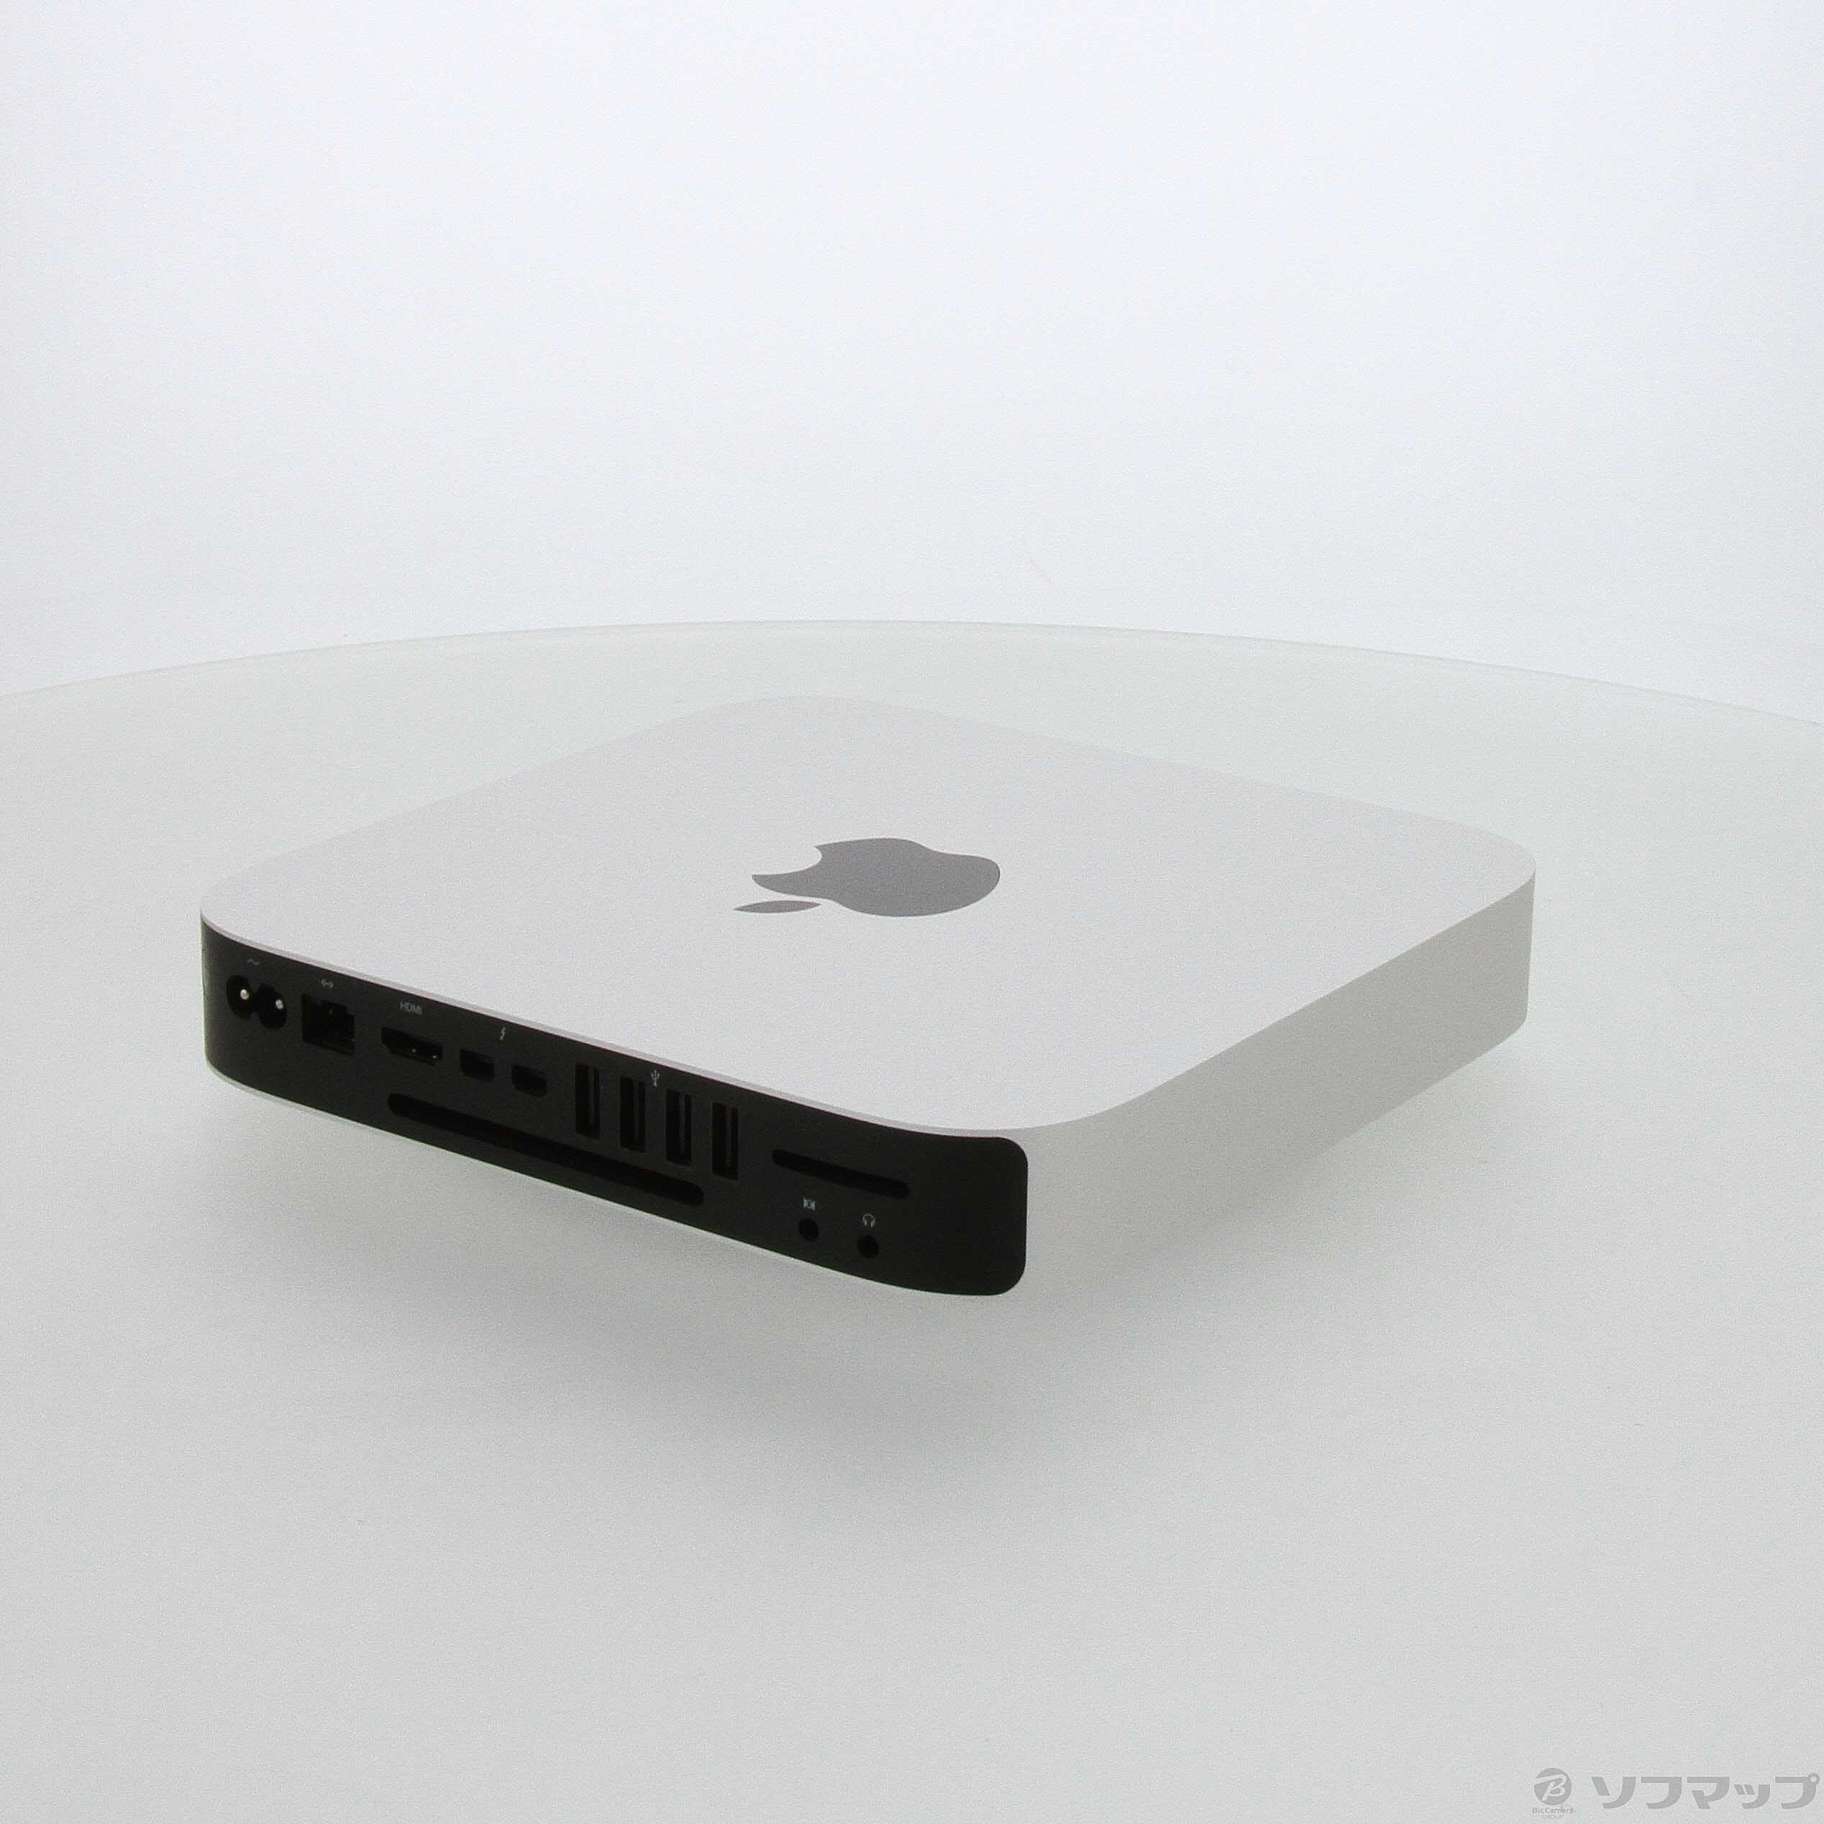 Mac mini (2014) HD1TB/8GB/Core i5